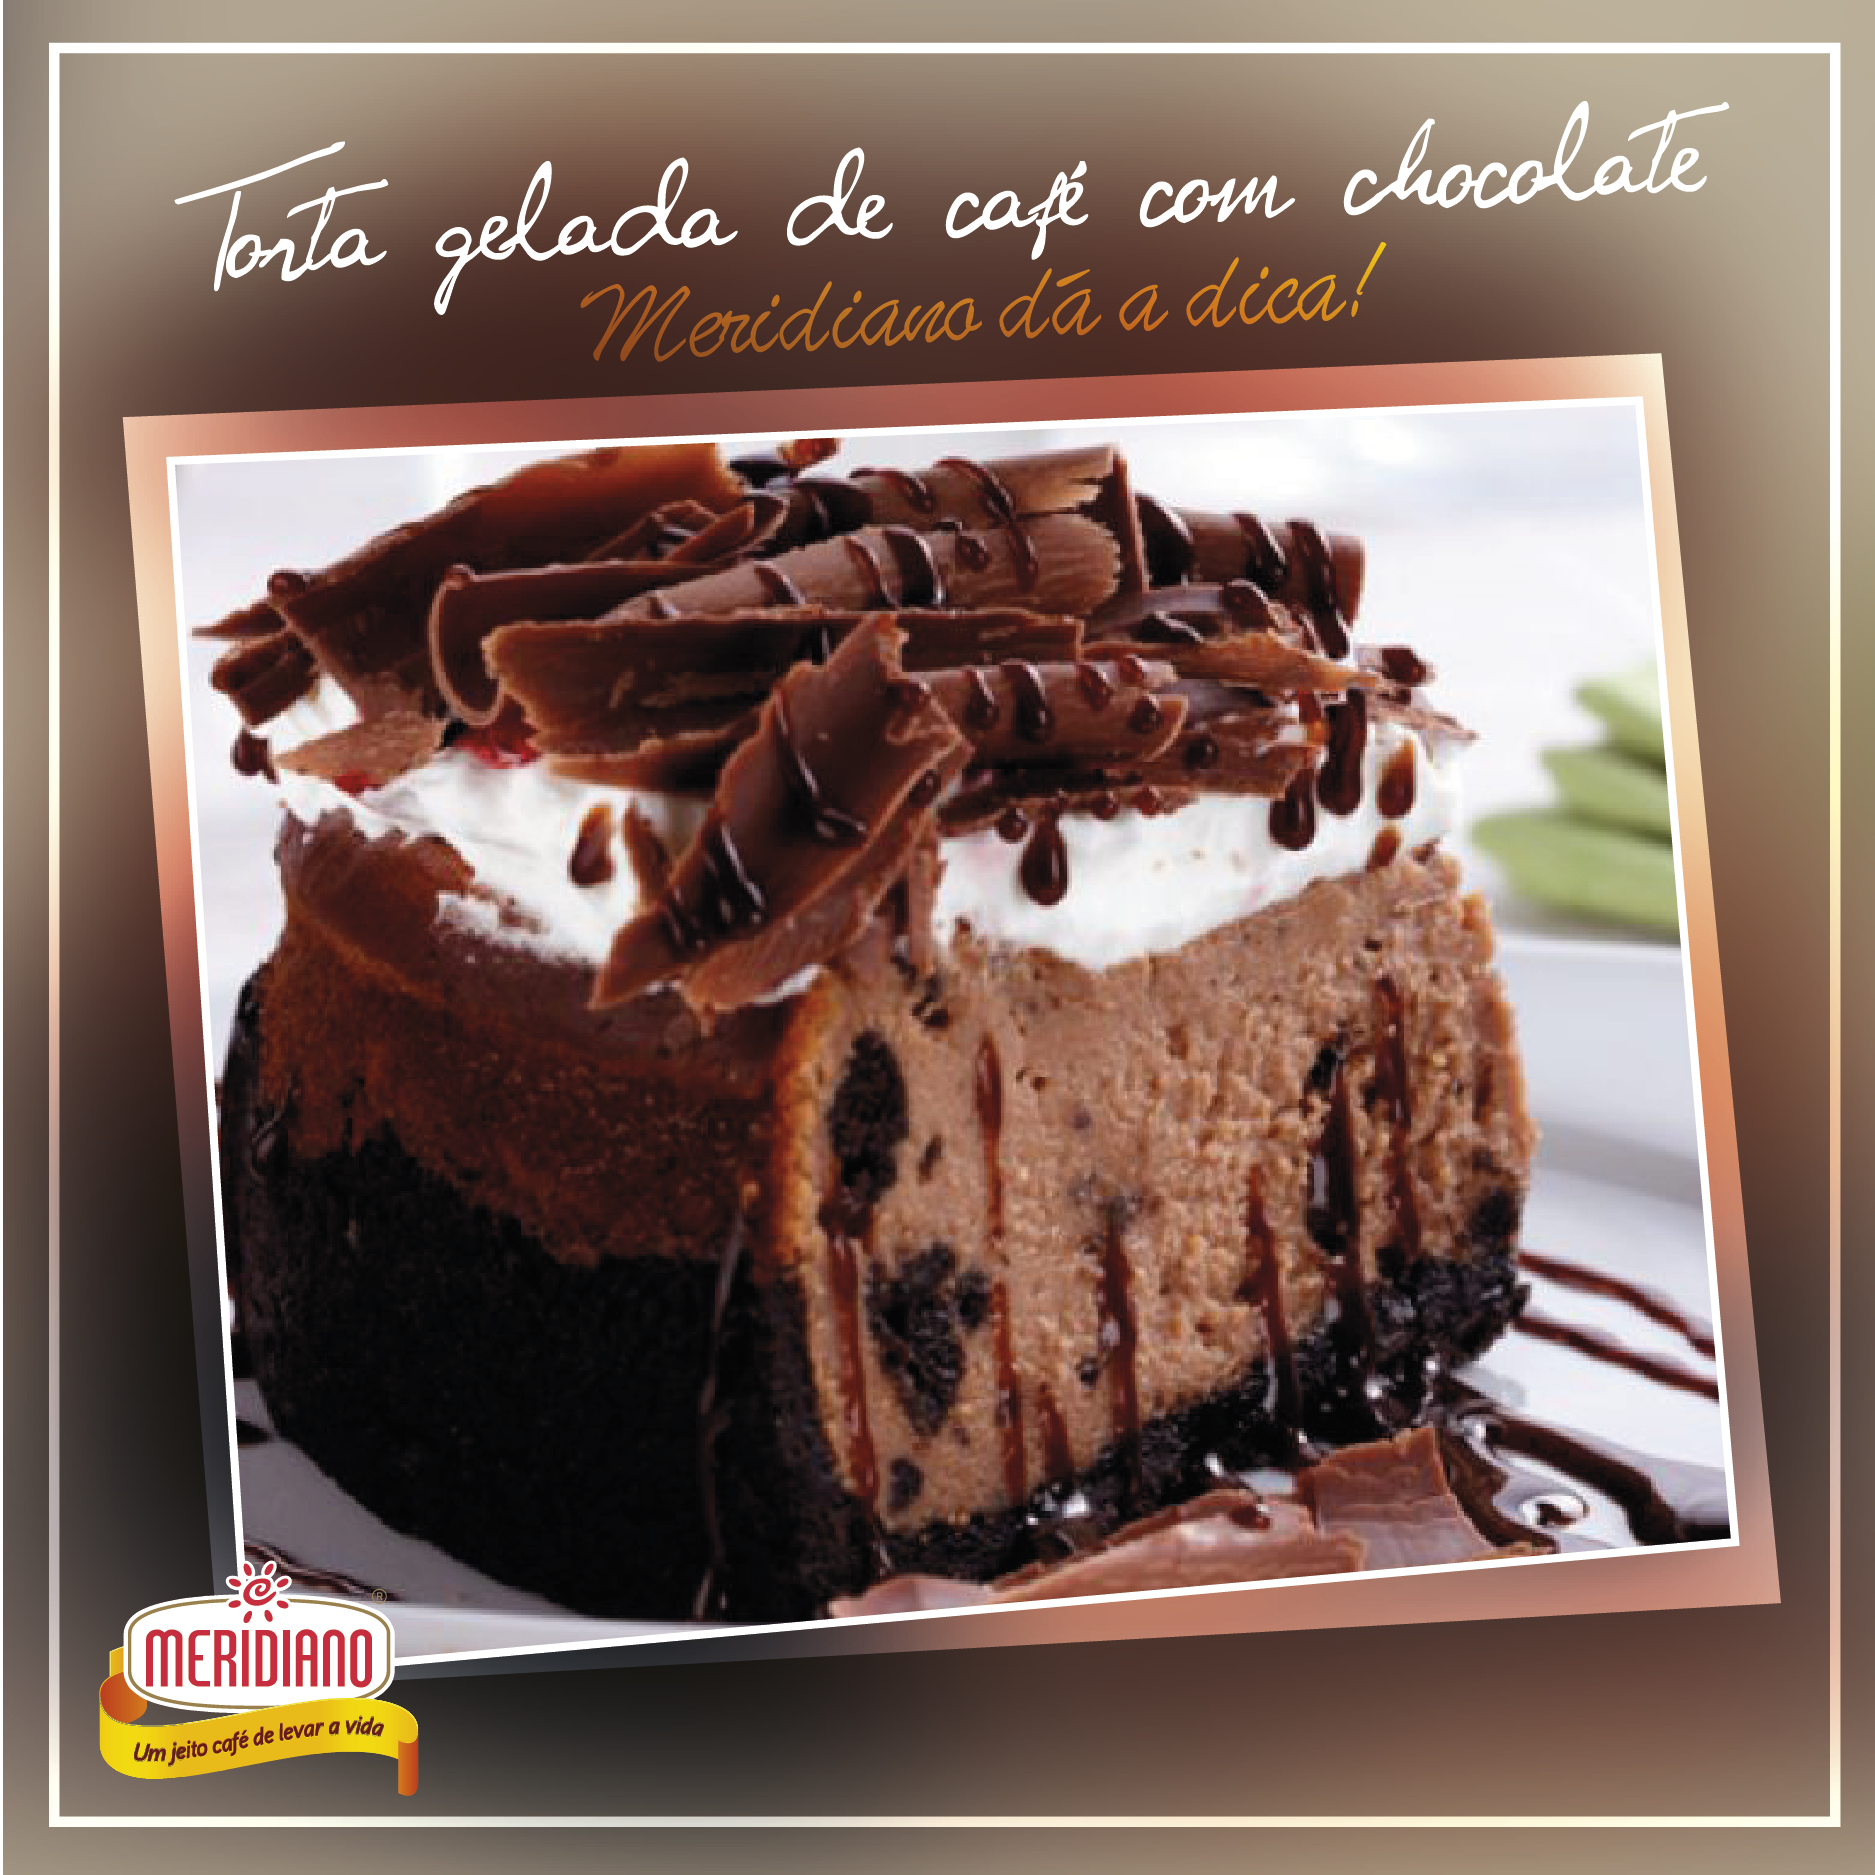 Torta gelada de café Meridiano com chocolate